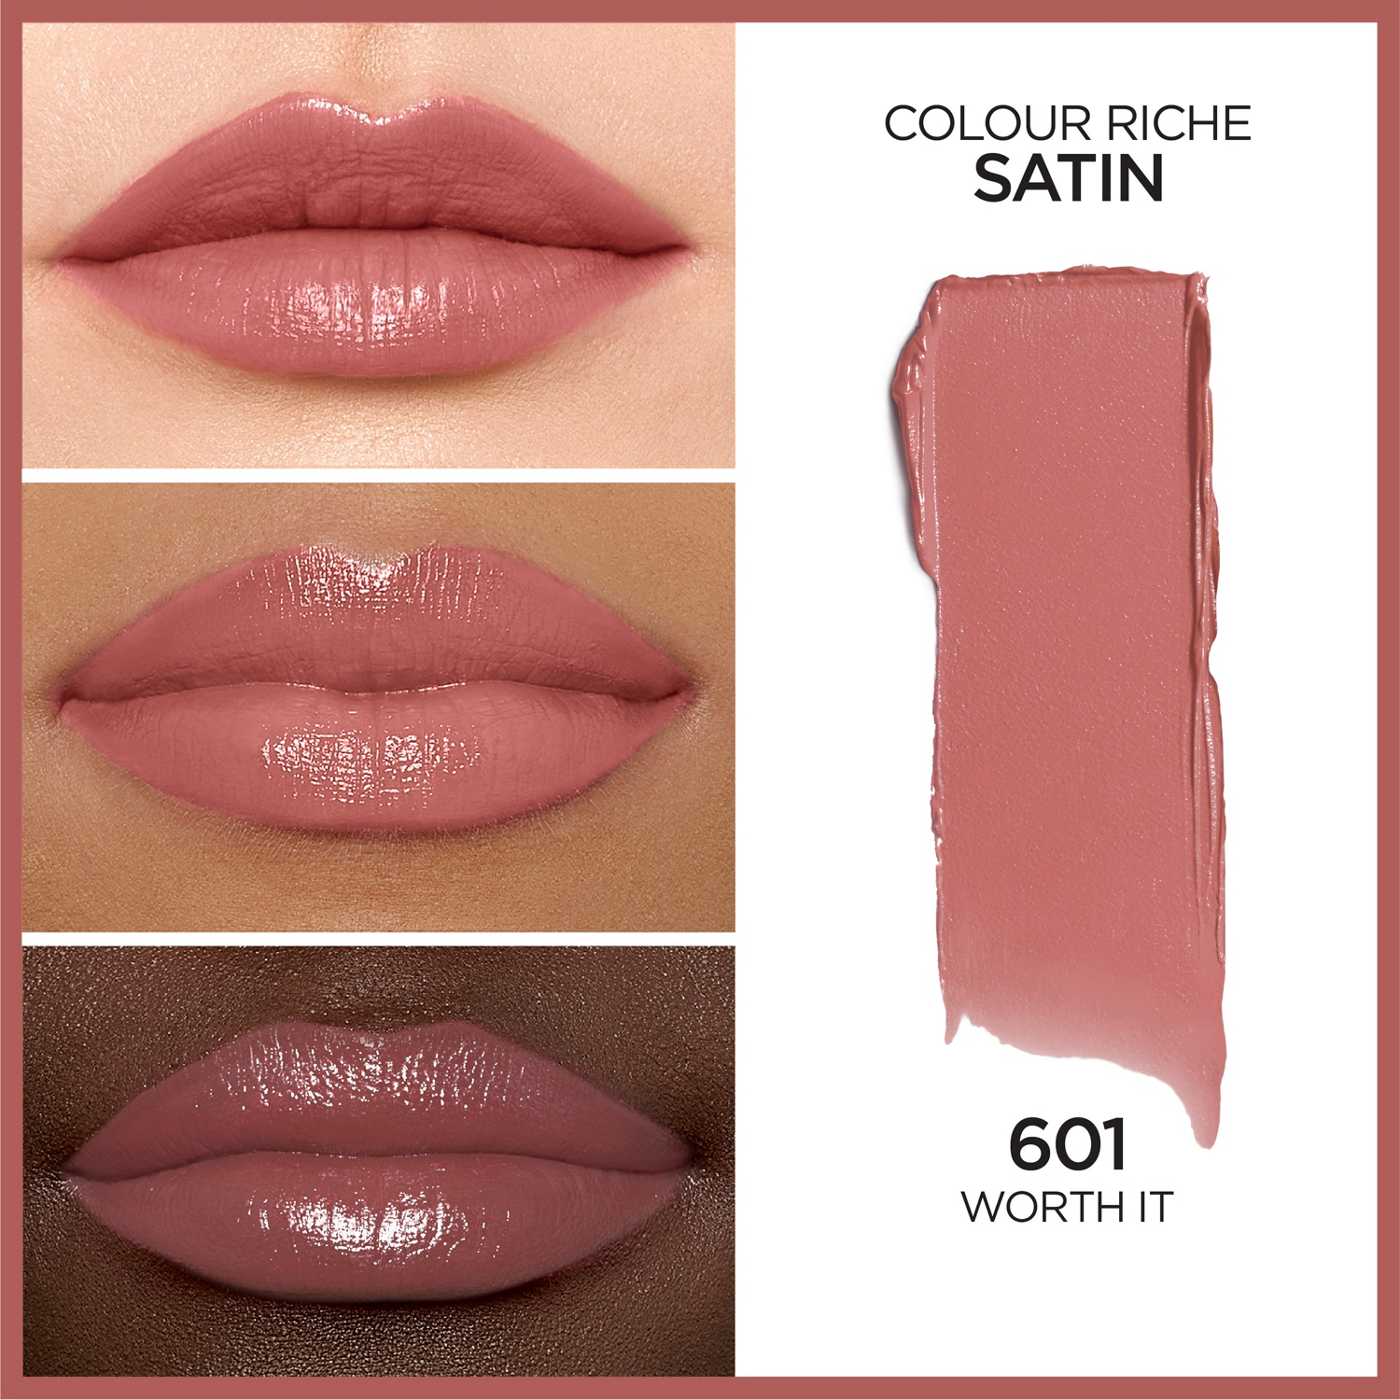 L'Oréal Paris Colour Riche Satin Lipstick - Worth It; image 3 of 5